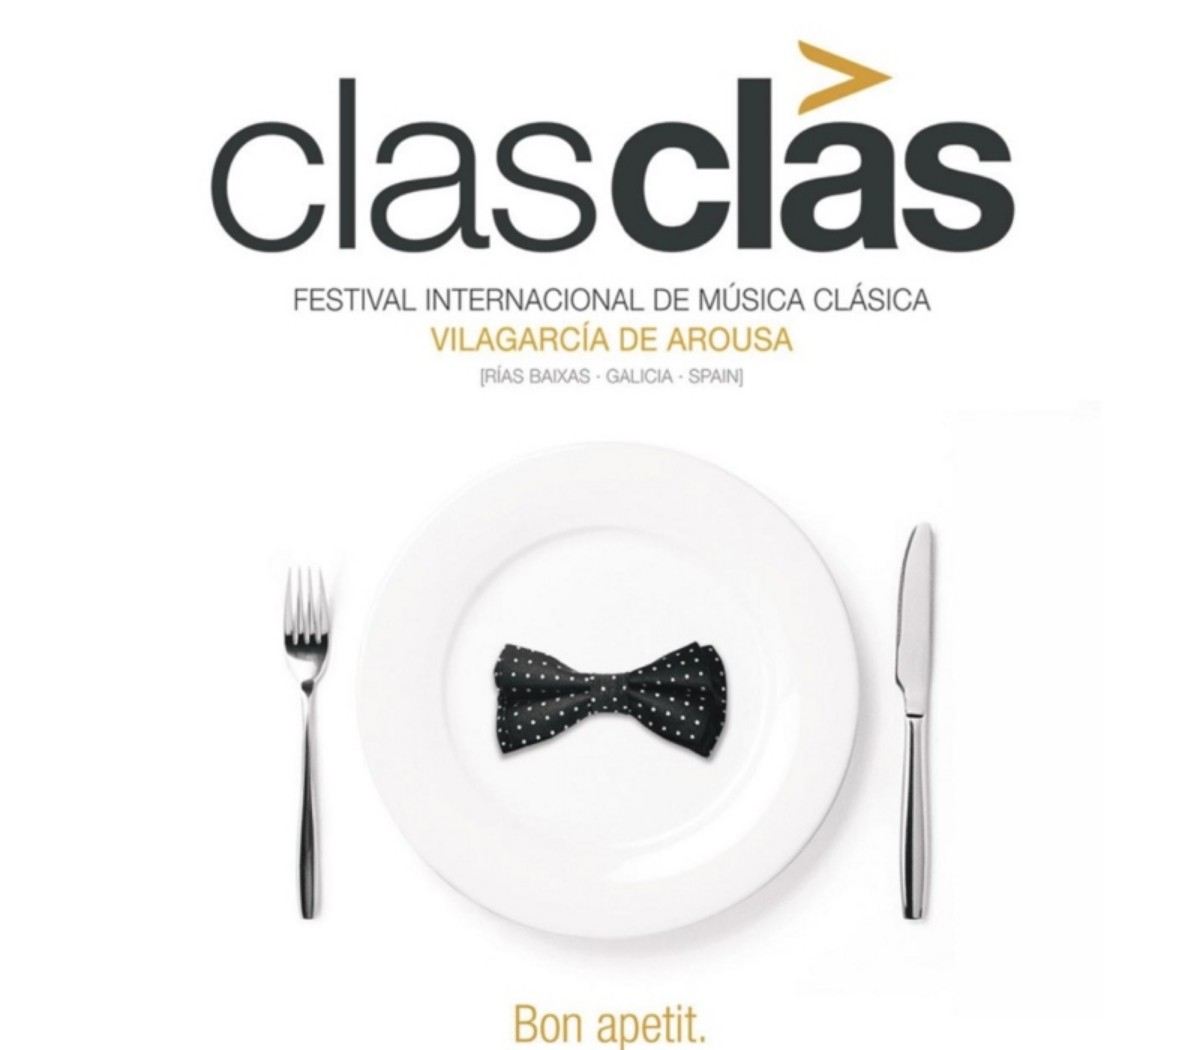 Festival Clas Clas